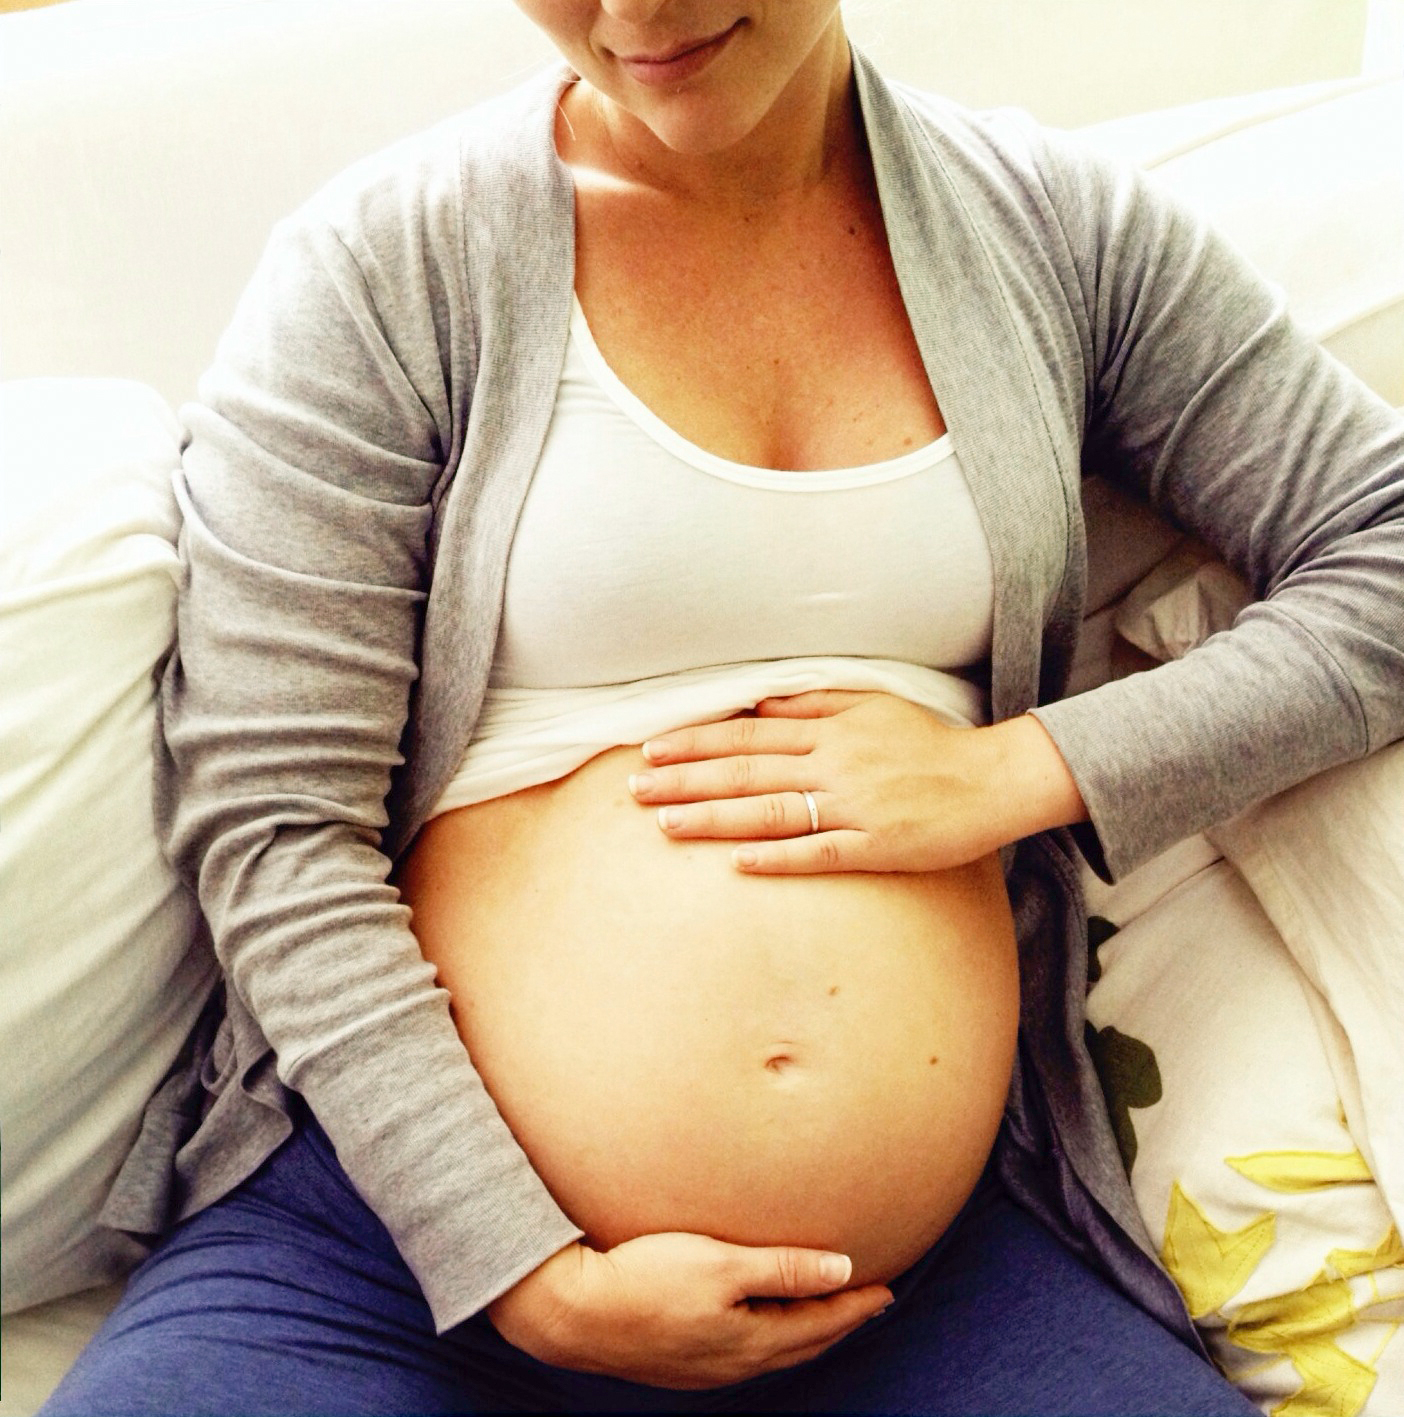 ПЭТ-КТ всего тела при беременности - противопоказания